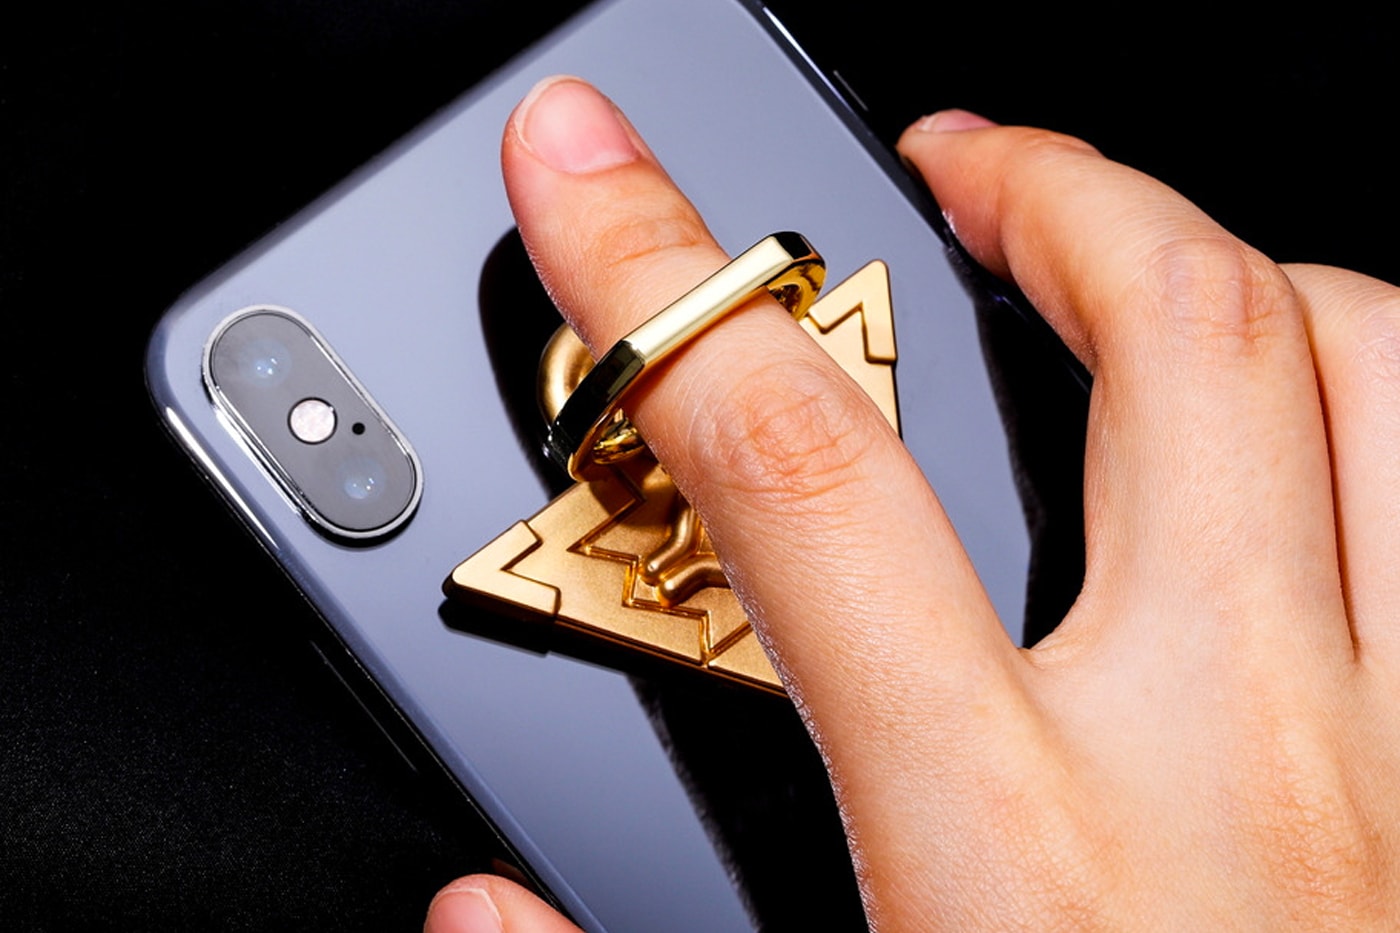 『遊☆戯☆王』の千年パズルをモチーフとしたスマホリングが登場 Yu-Gi-Oh! Millenium Puzzle Phone Ring Holder Release Info Buy Price 